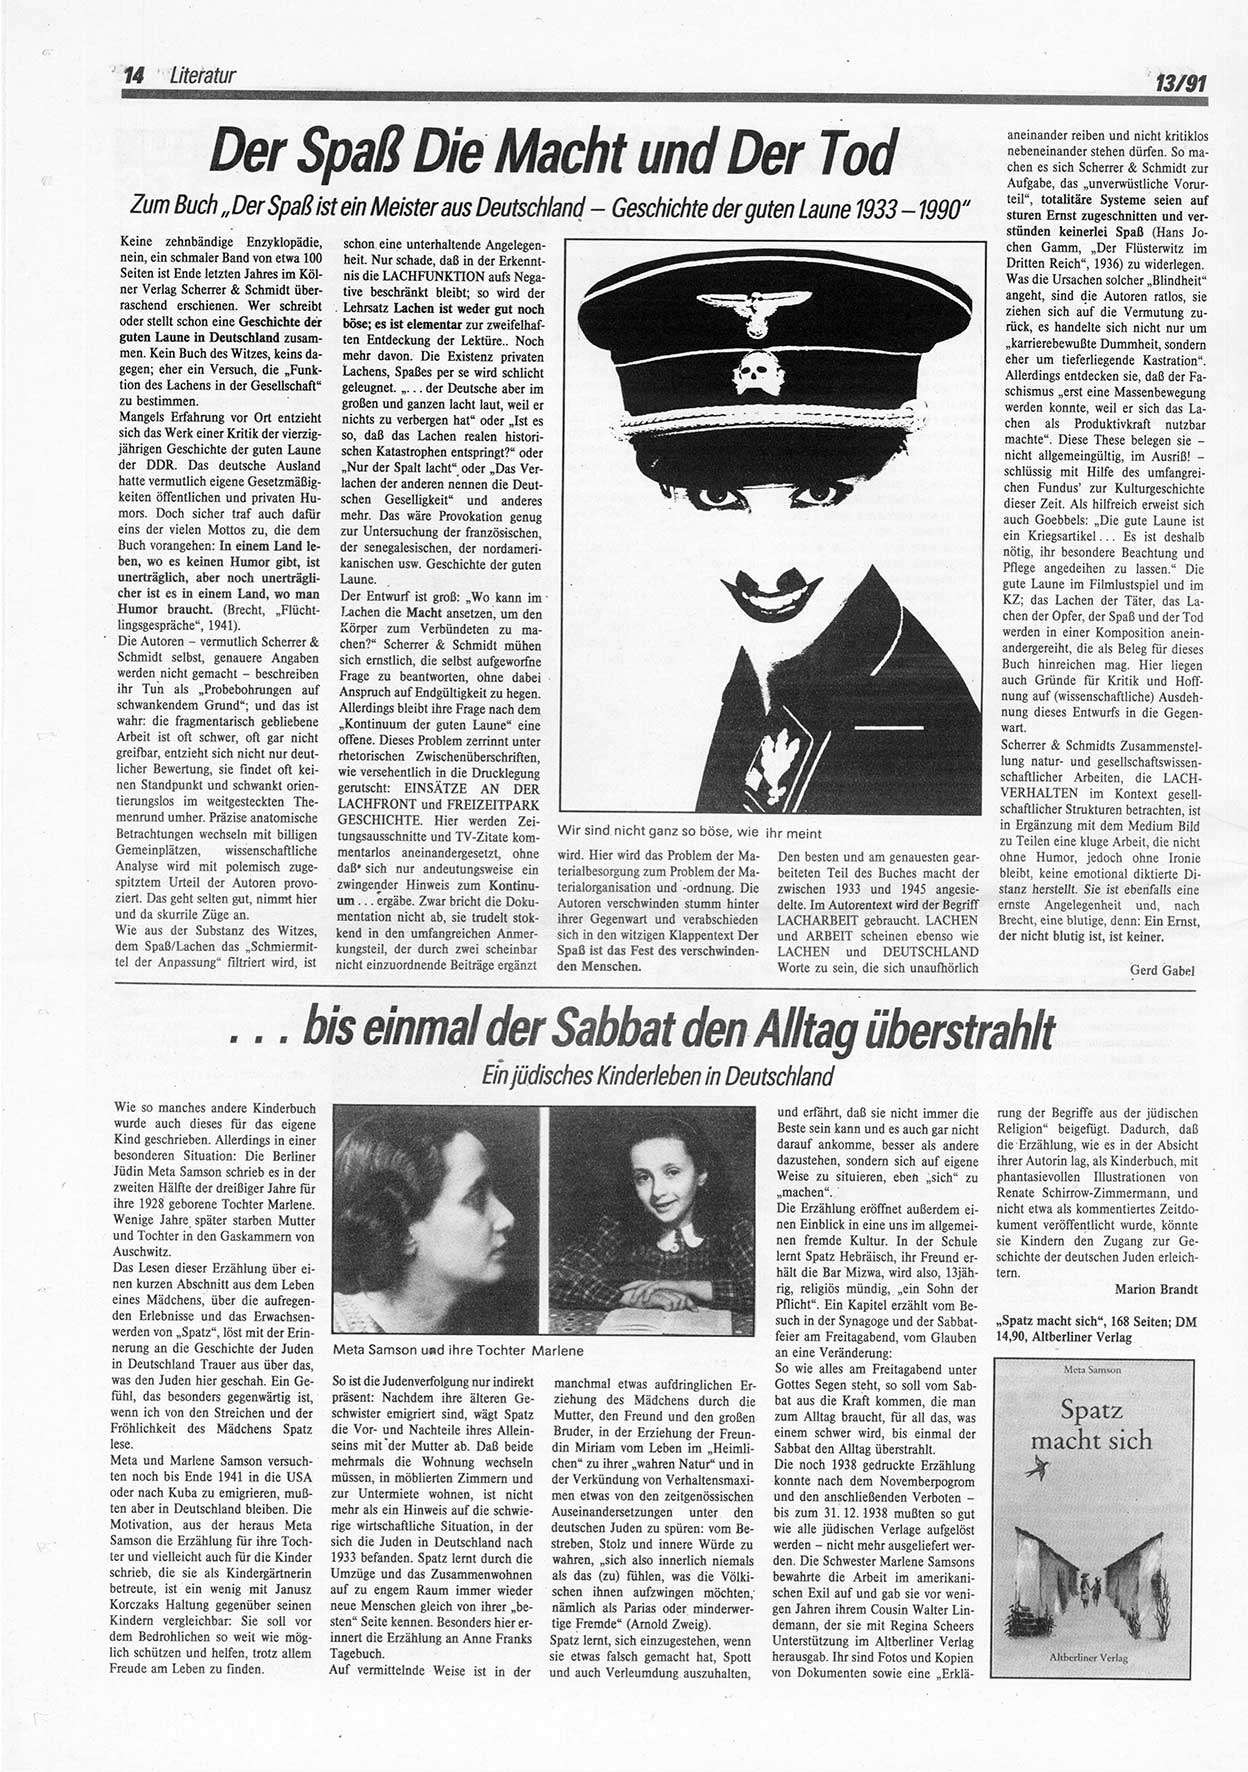 Die Andere, Unabhängige Wochenzeitung für Politik, Kultur und Kunst, Ausgabe 13 vom 27.3.1991, Seite 14 (And. W.-Zg. Ausg. 13 1991, S. 14)